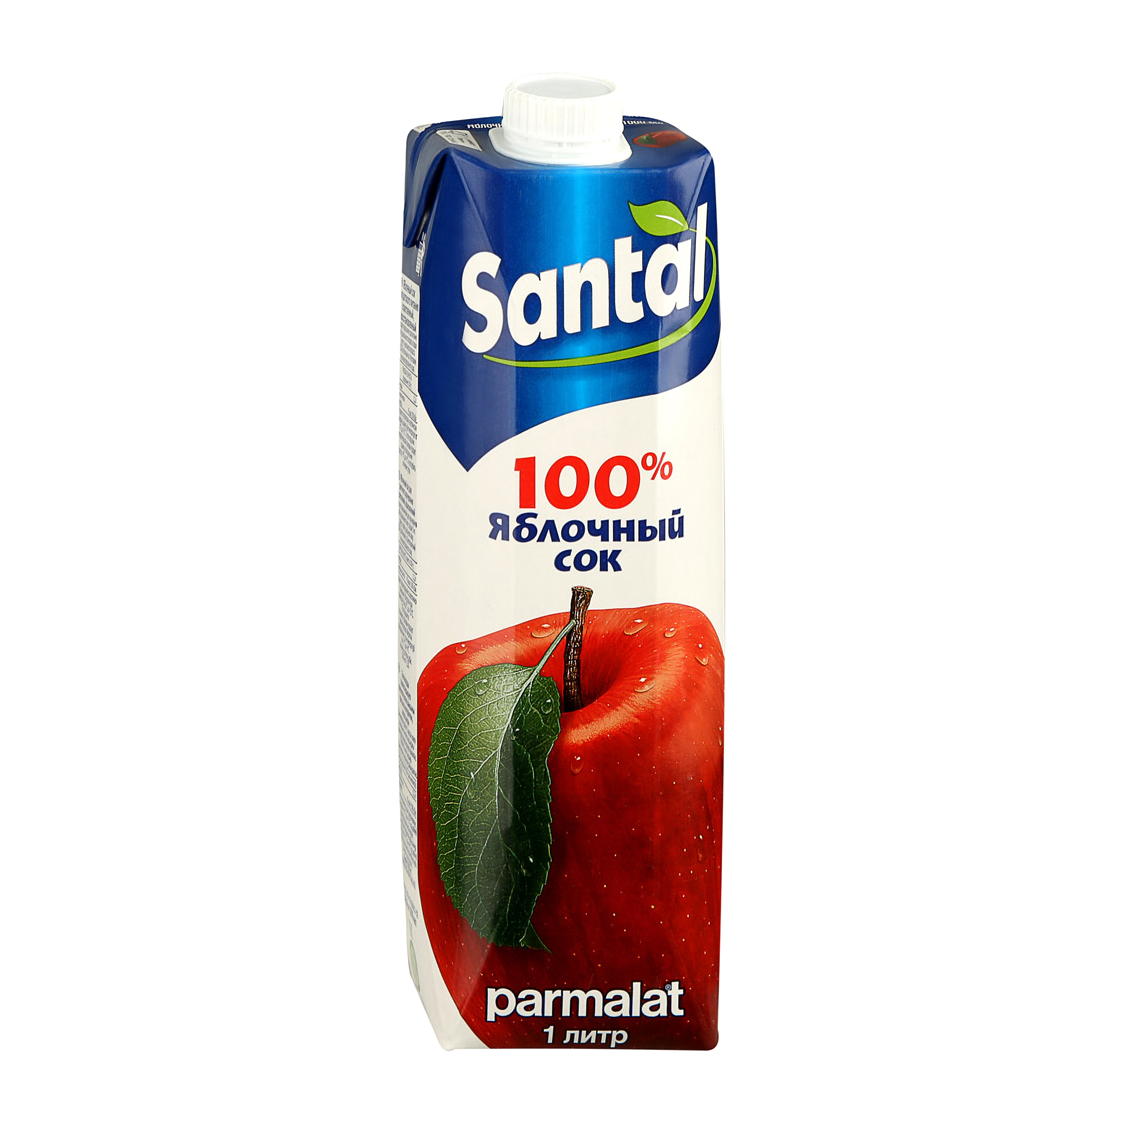 Сок Santal яблочный 100% 1 л сок santal апельсиновый 1 л